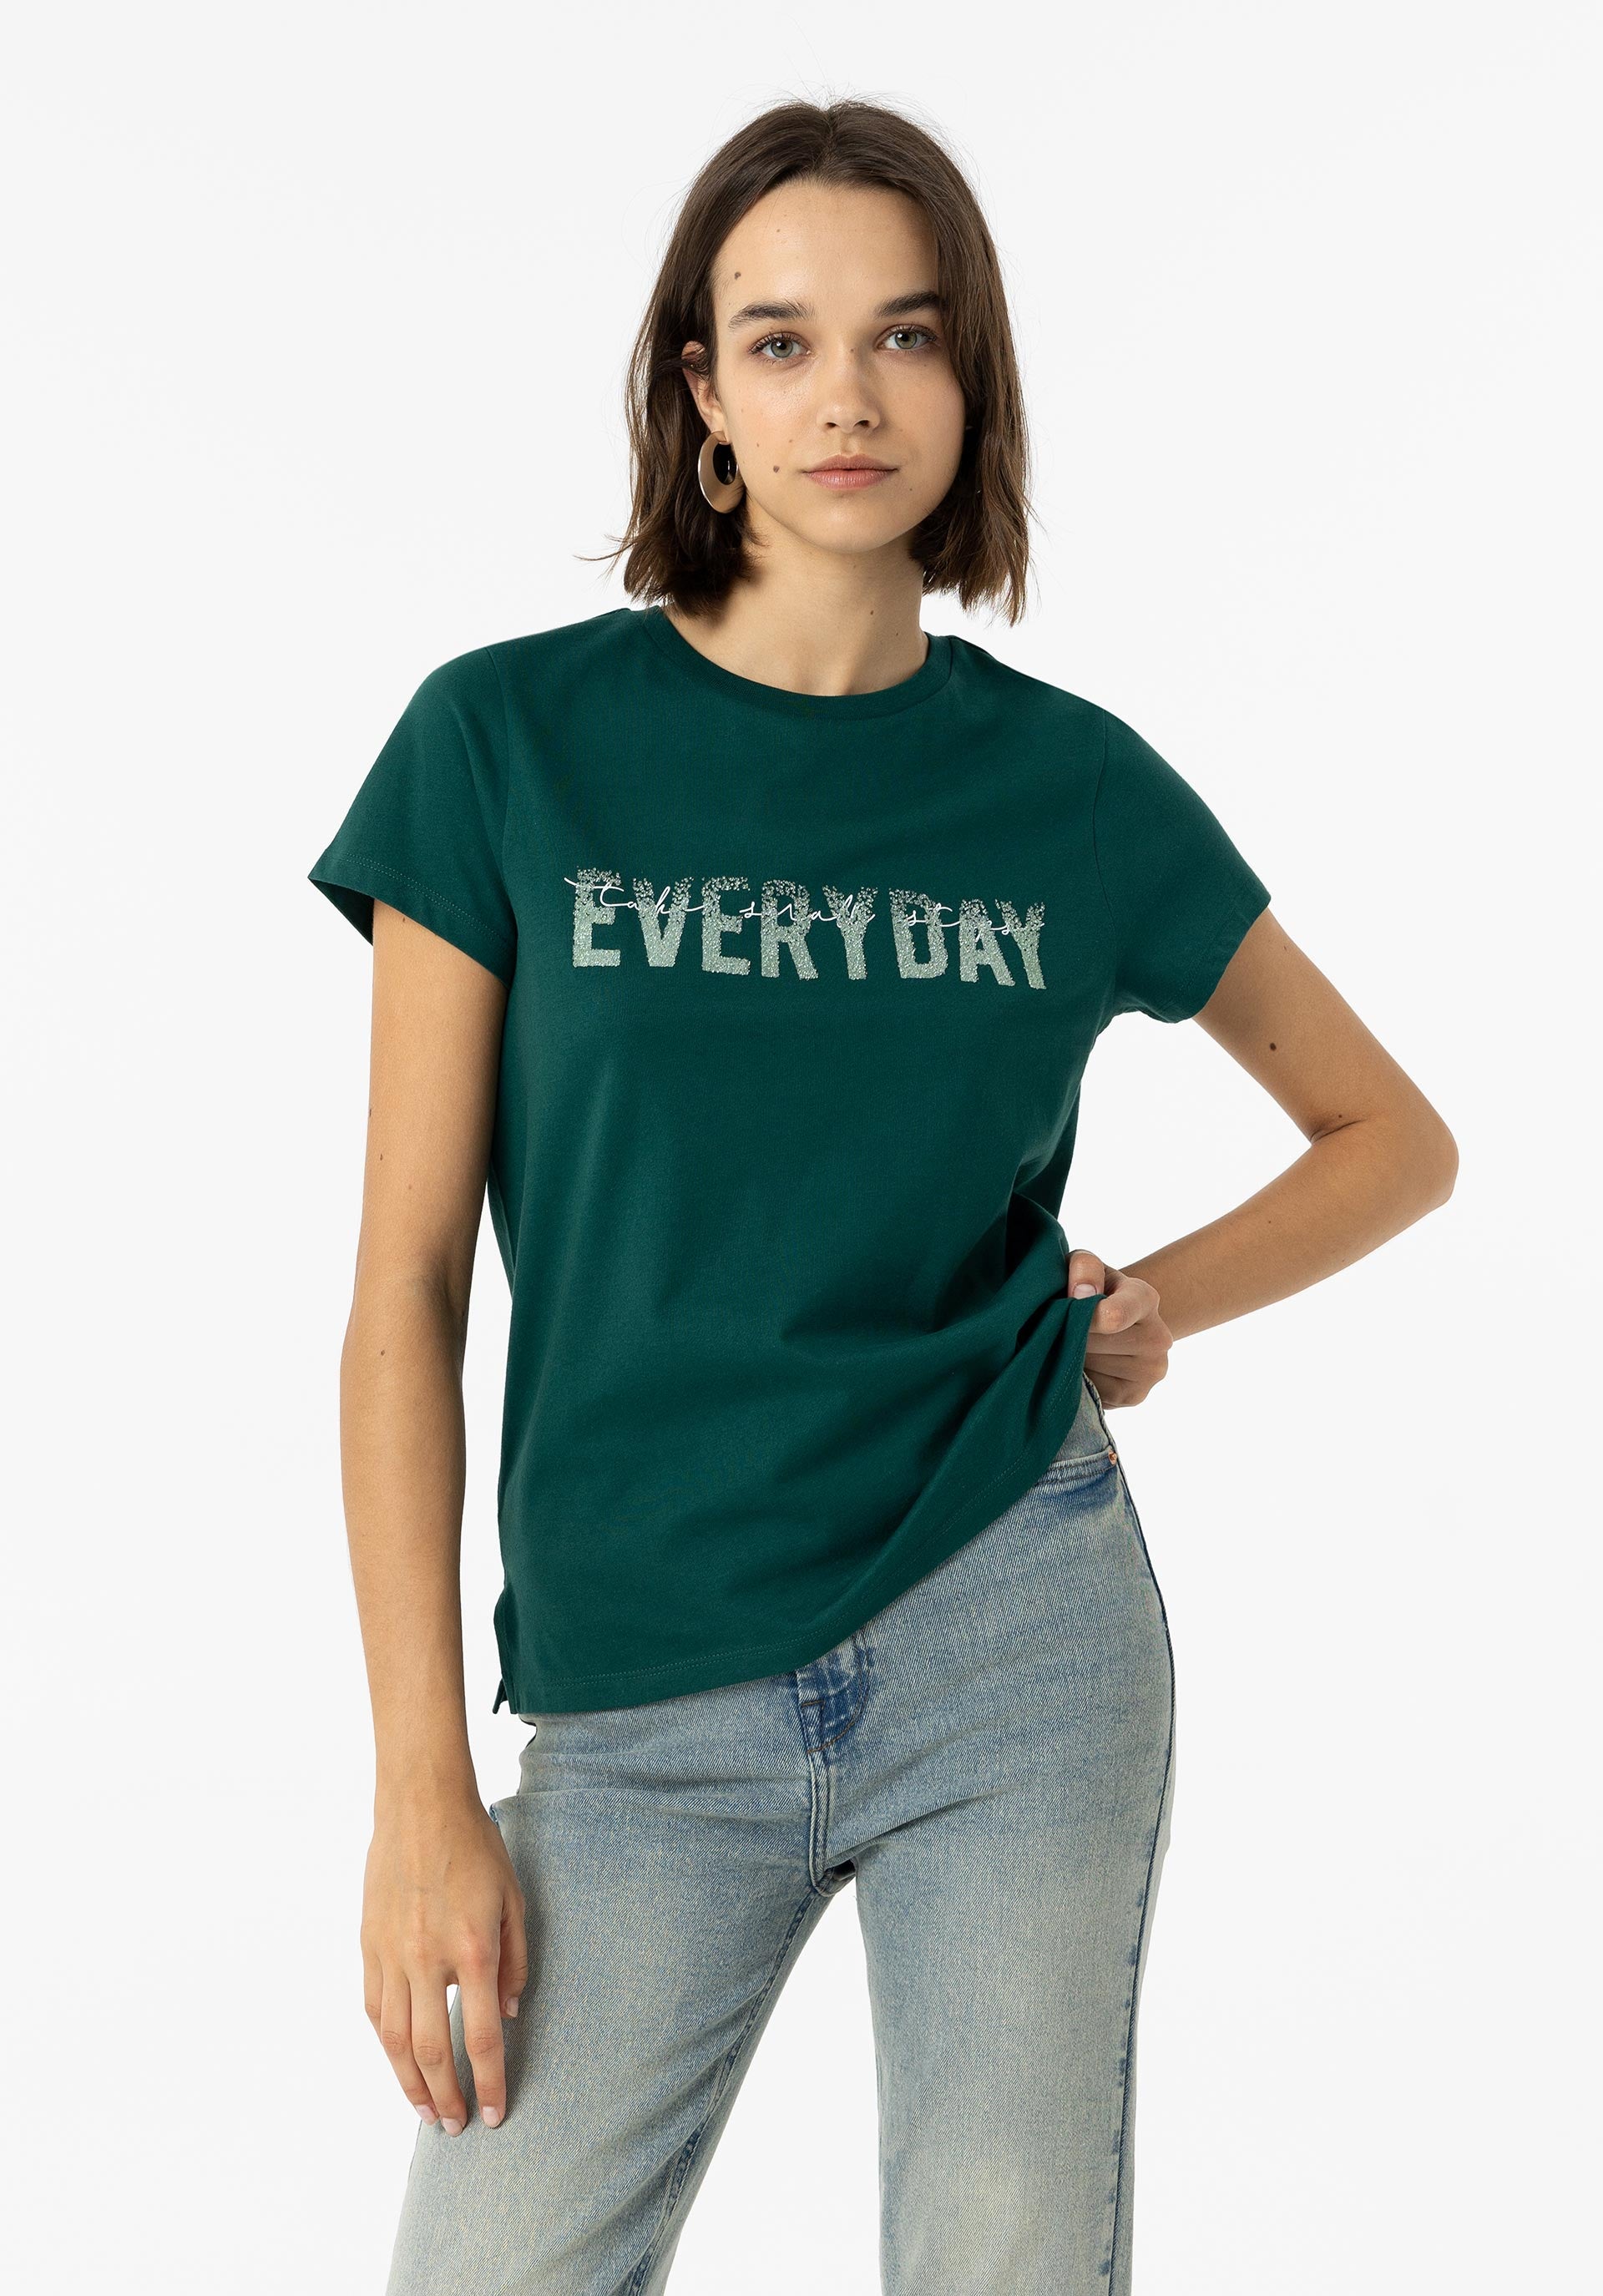 Camiseta  tiffosi modelo Florence 10058136 886